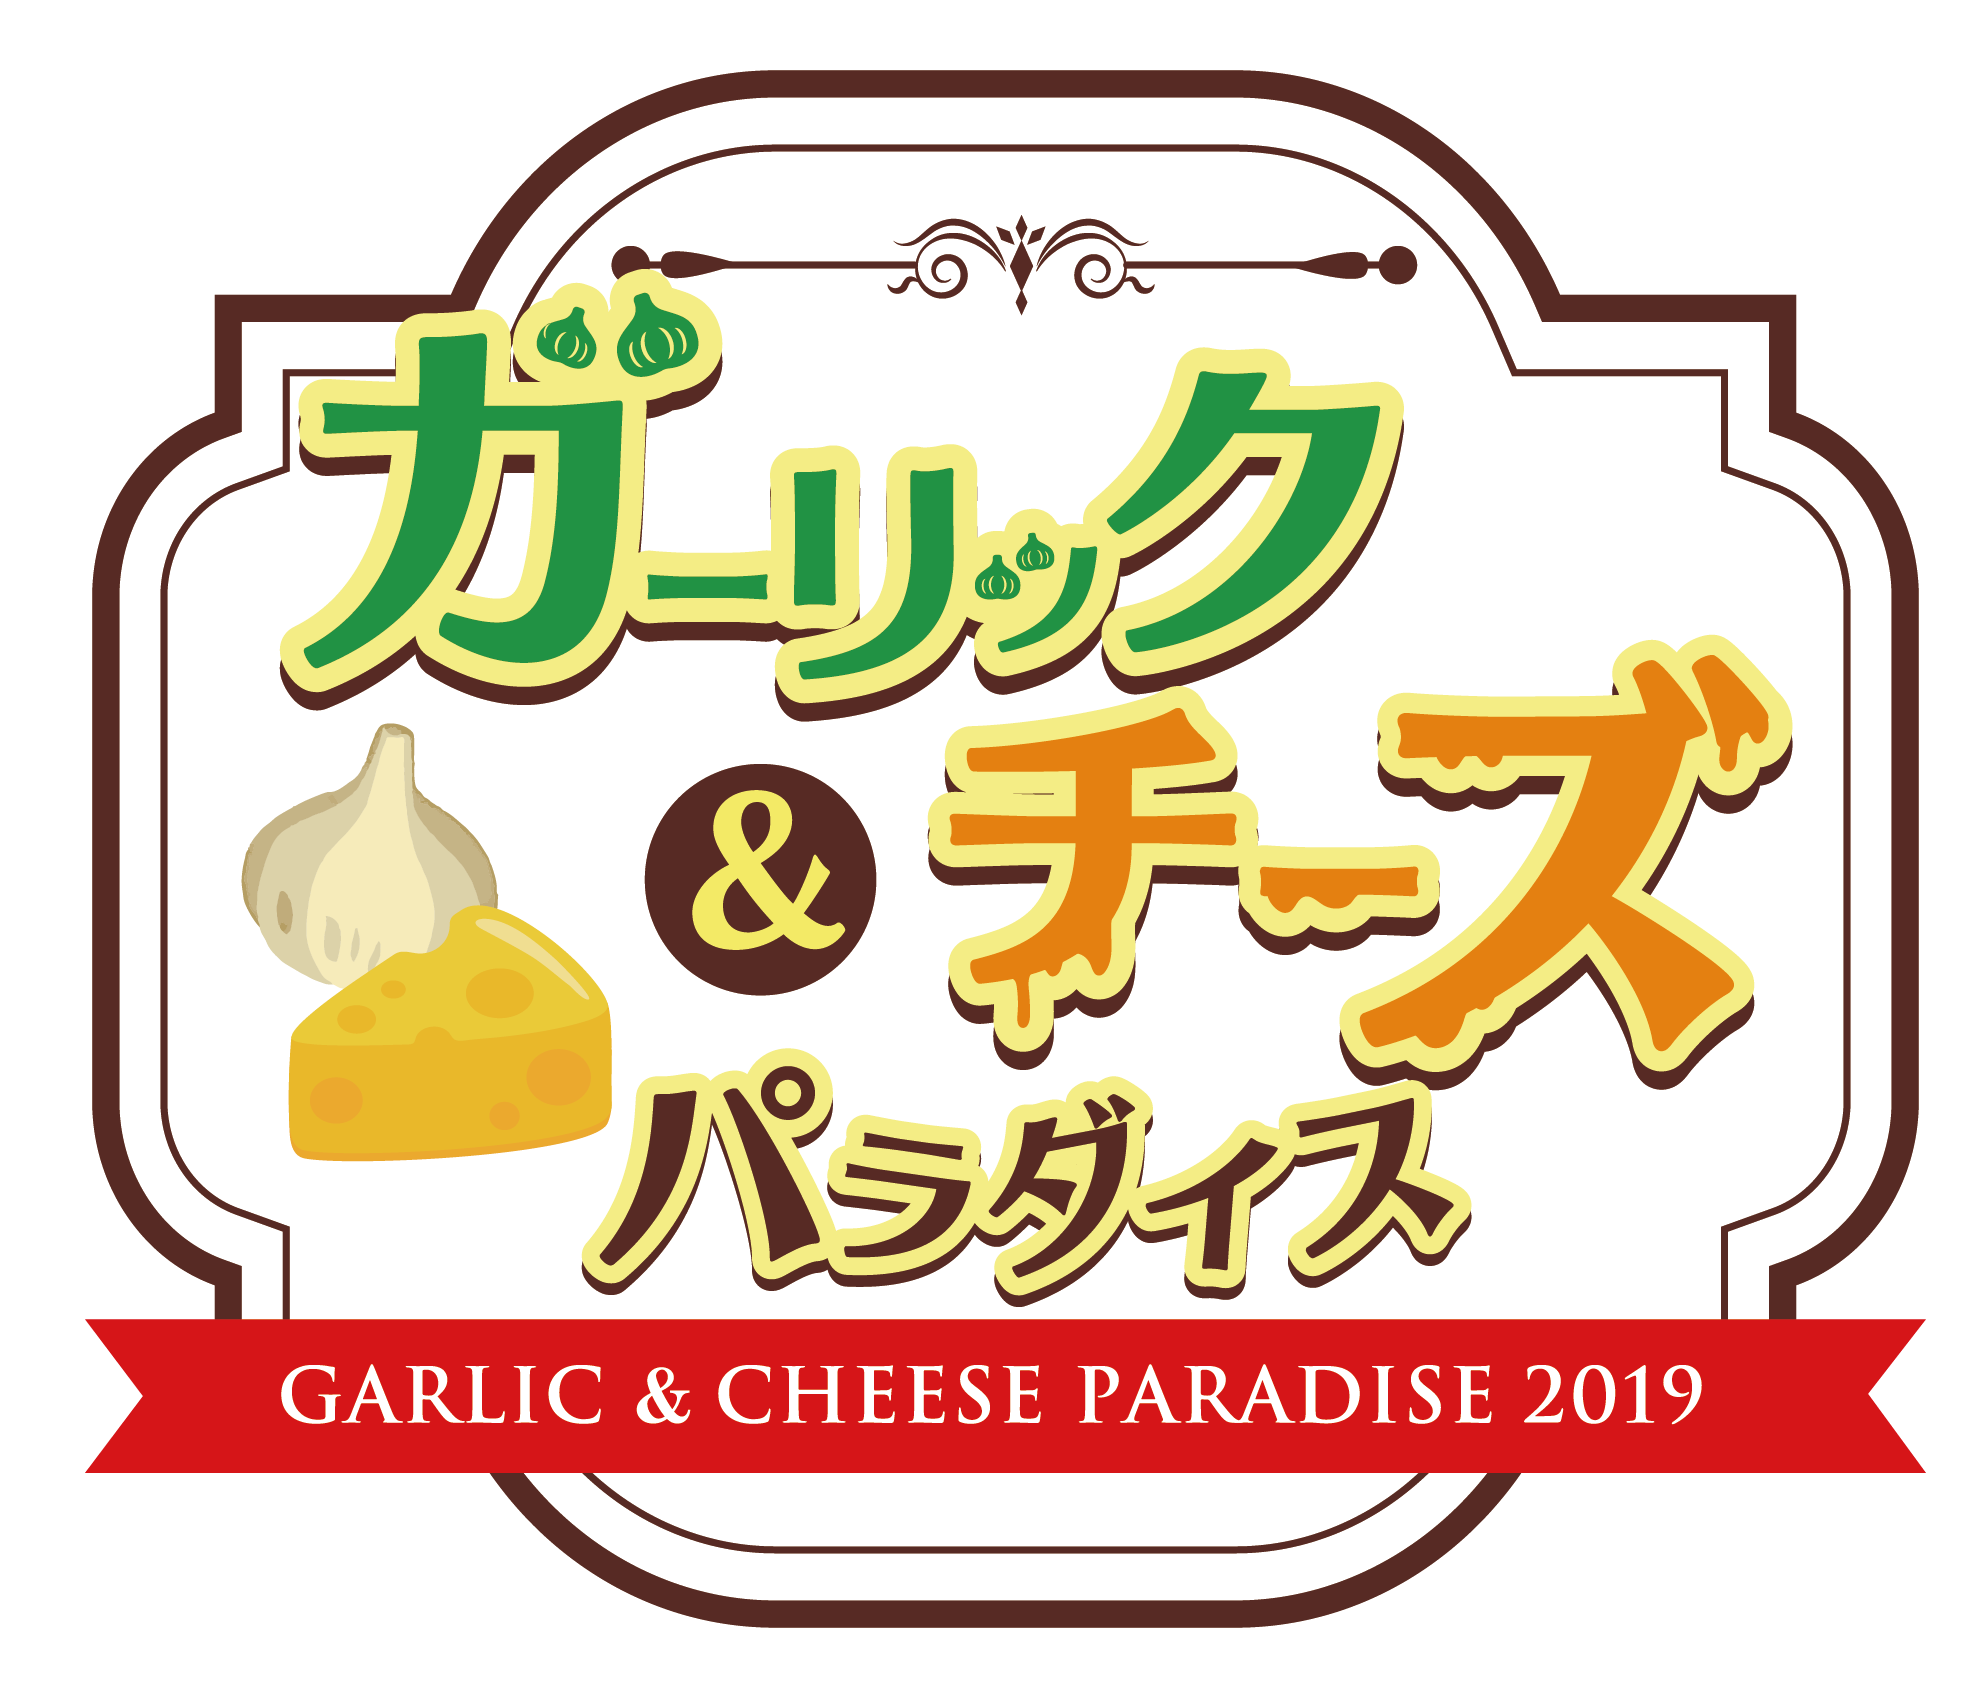 期間限定 新宿歌舞伎町にニンニク料理とチーズ料理の楽園誕生 ニンニクがっつり 濃厚チーズの楽園 ガーリック チーズパラダイス は9日間だけ インディー